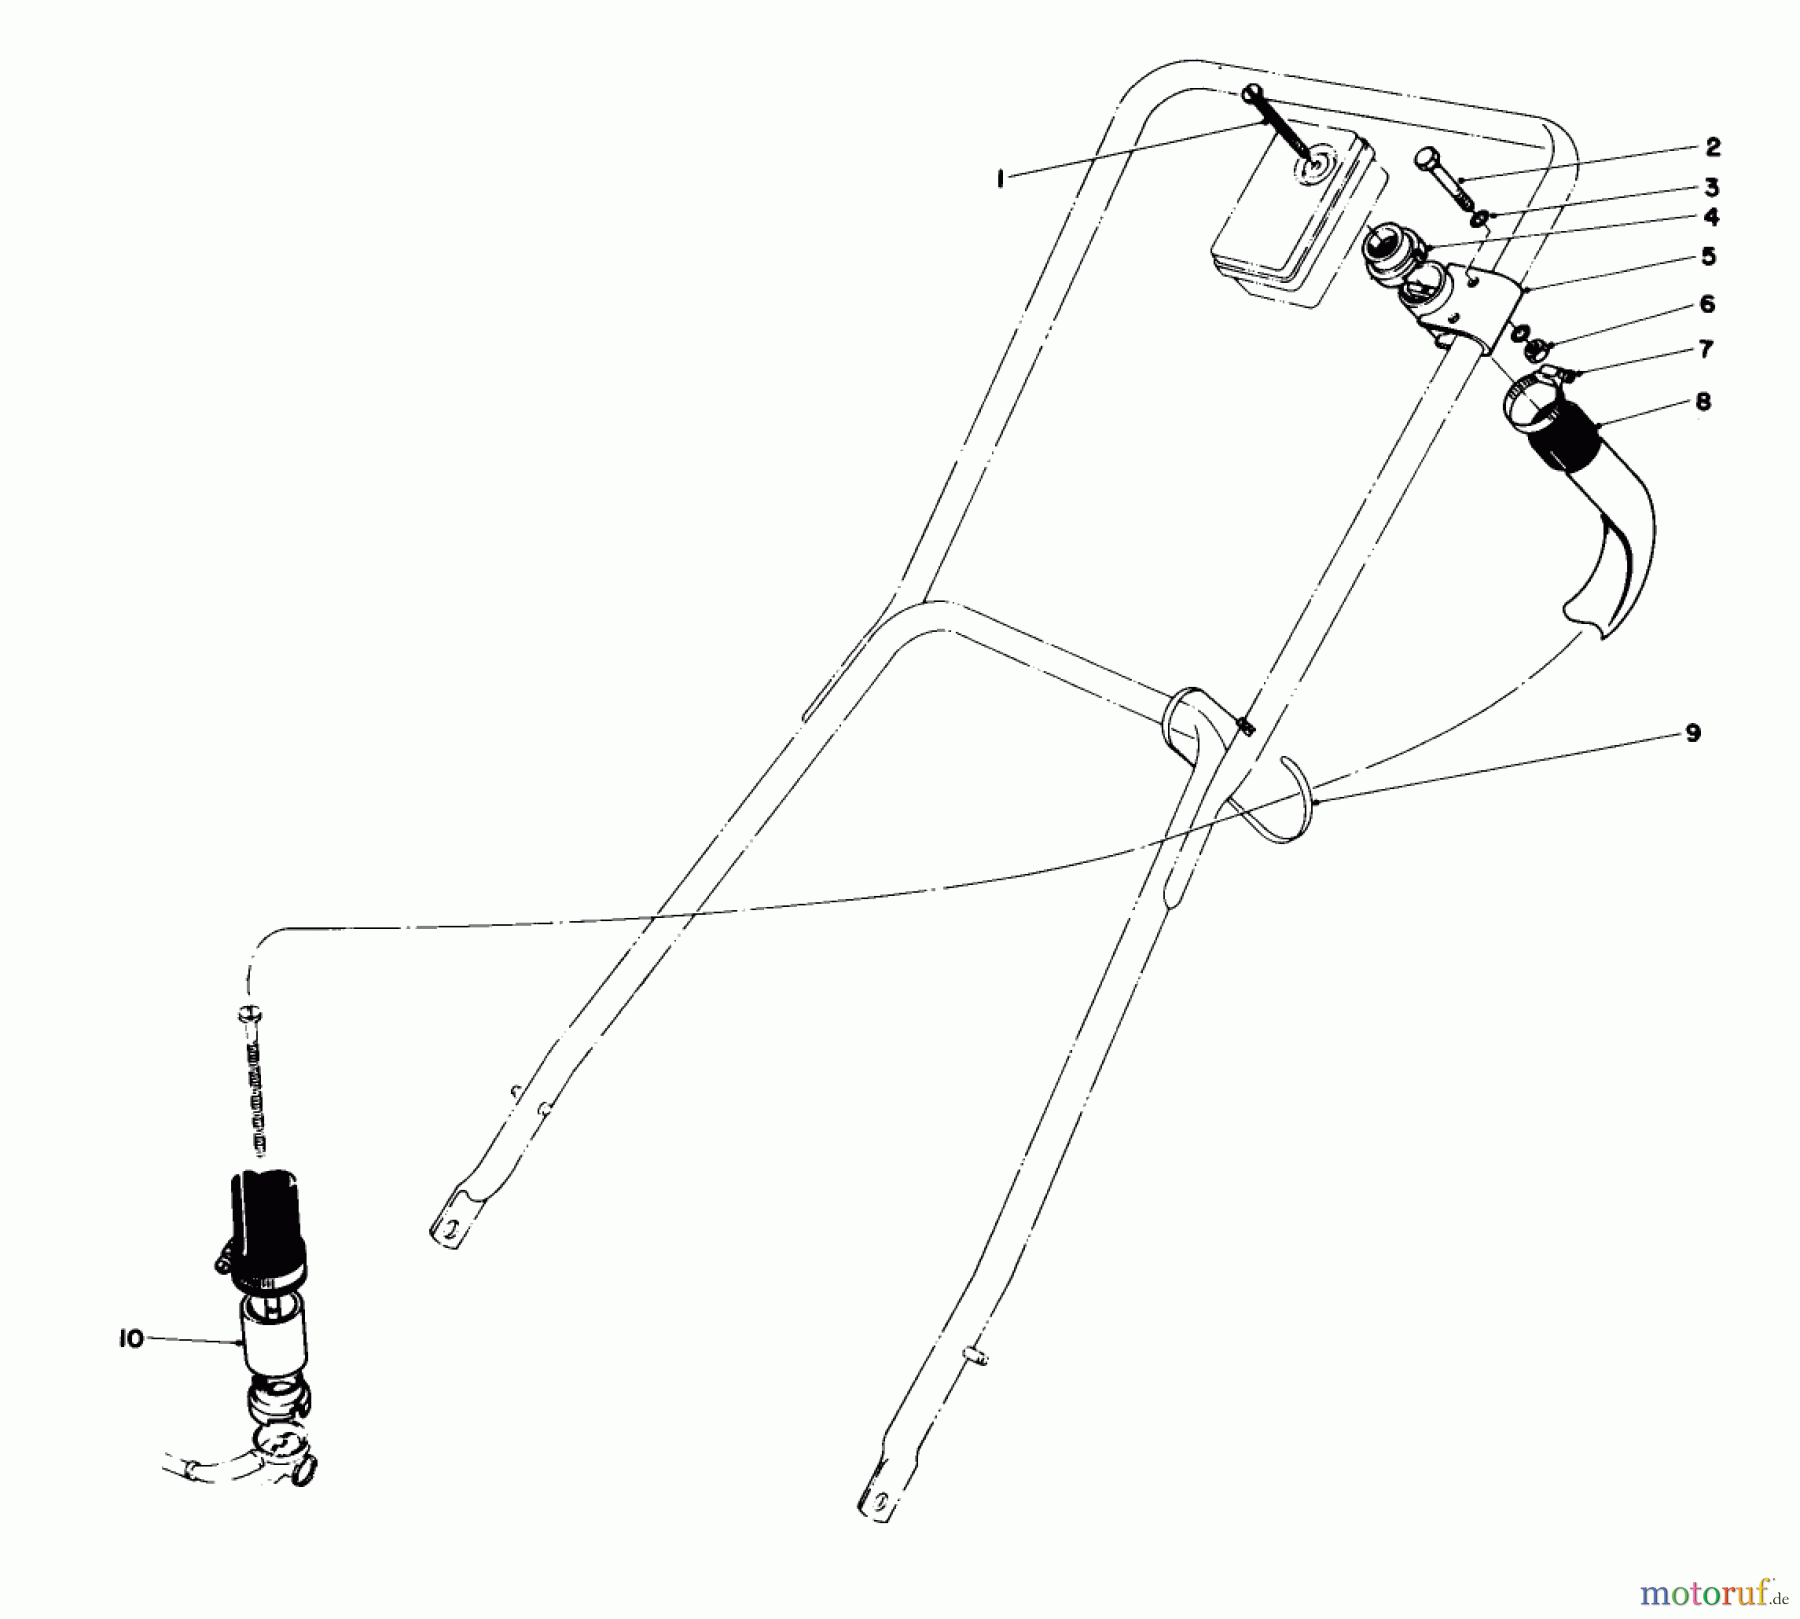  Toro Neu Mowers, Walk-Behind Seite 2 23022 - Toro Lawnmower, 1976 (6000001-6999999) REMOTE AIR CLEANER KIT NO. 28-0580